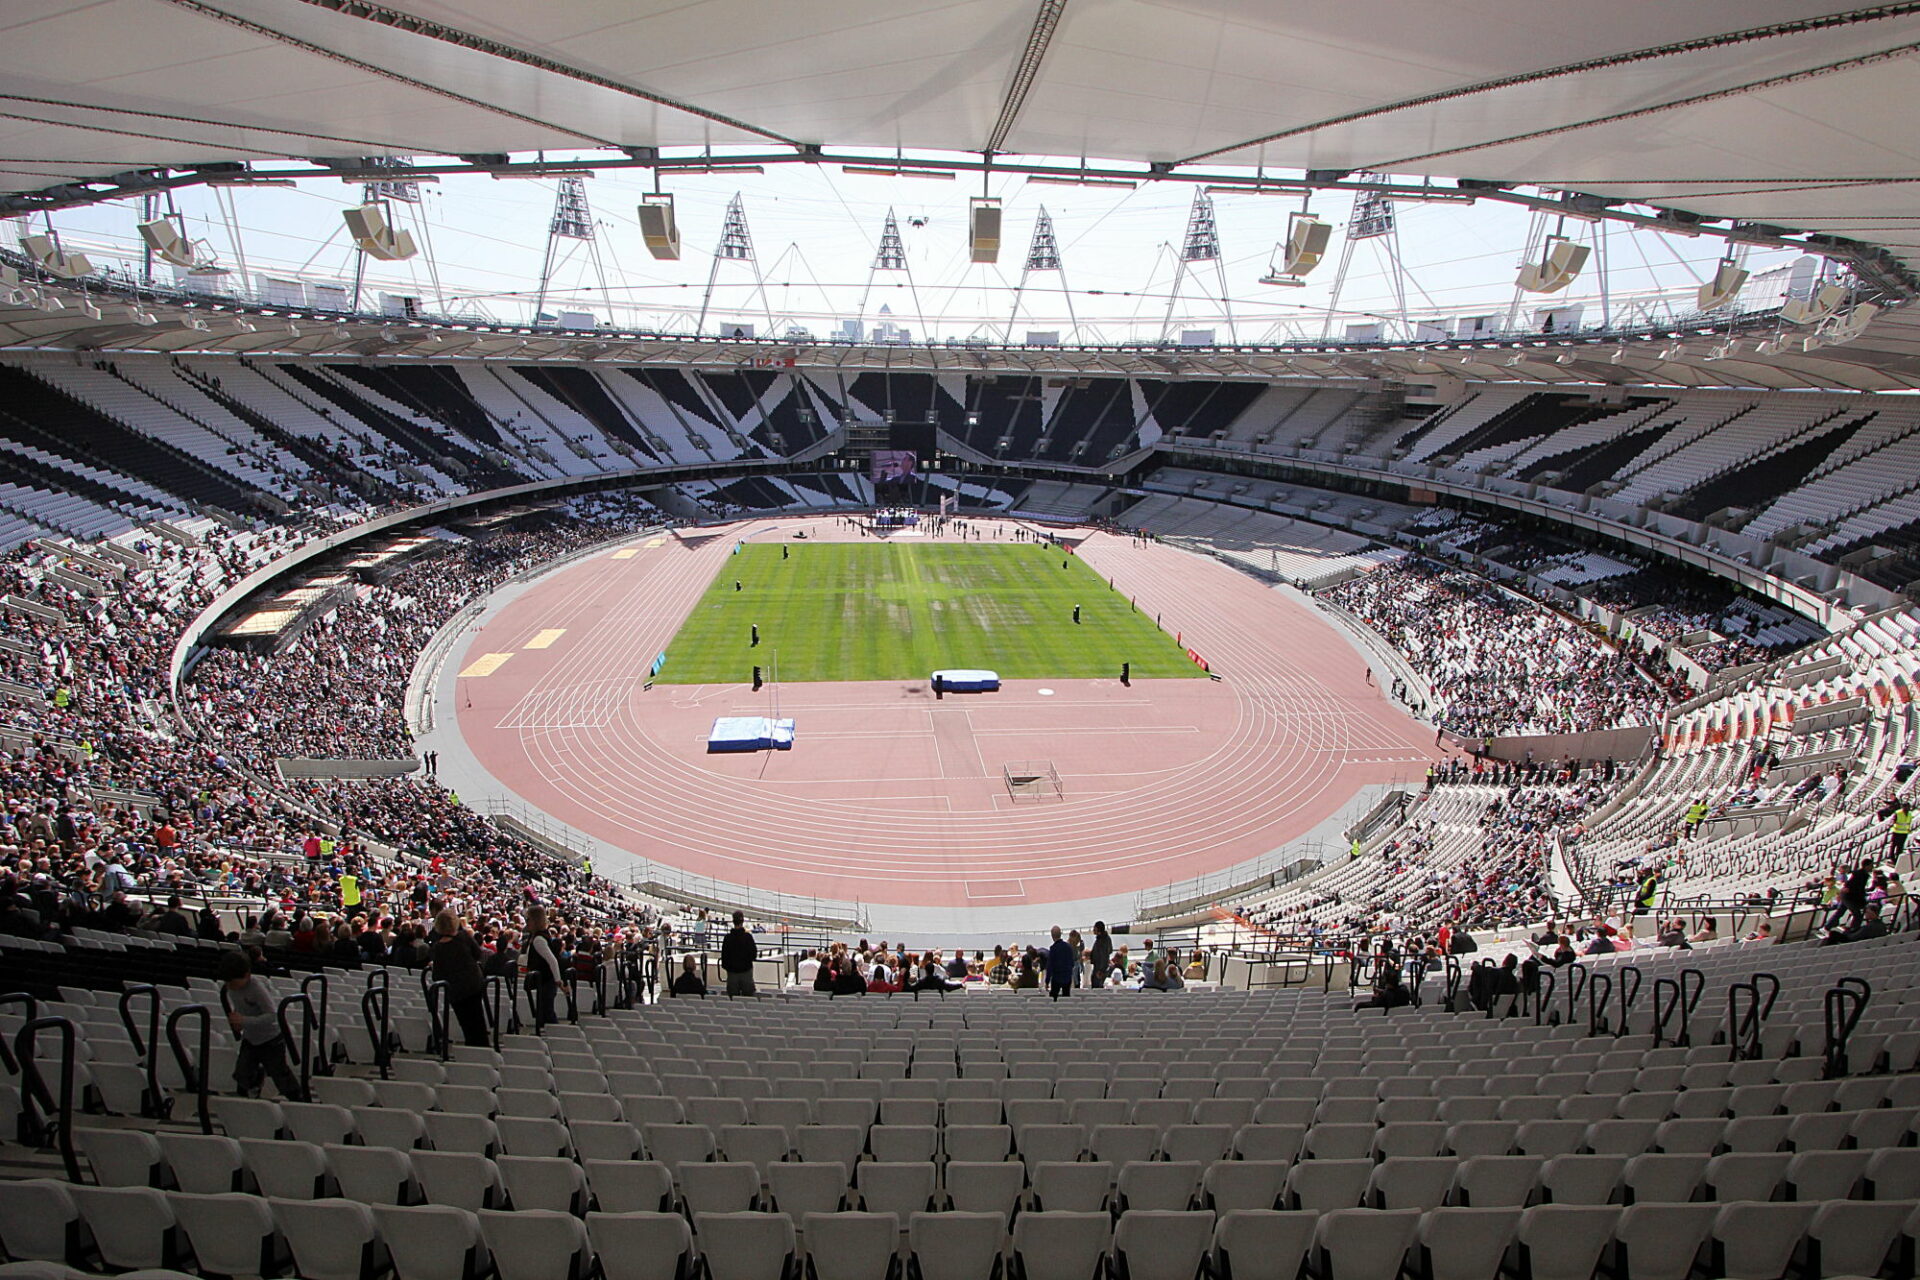 بطولة لألعاب القوى فب ملعب لندن الأولمبي (ملعب وست هام يونايتد)